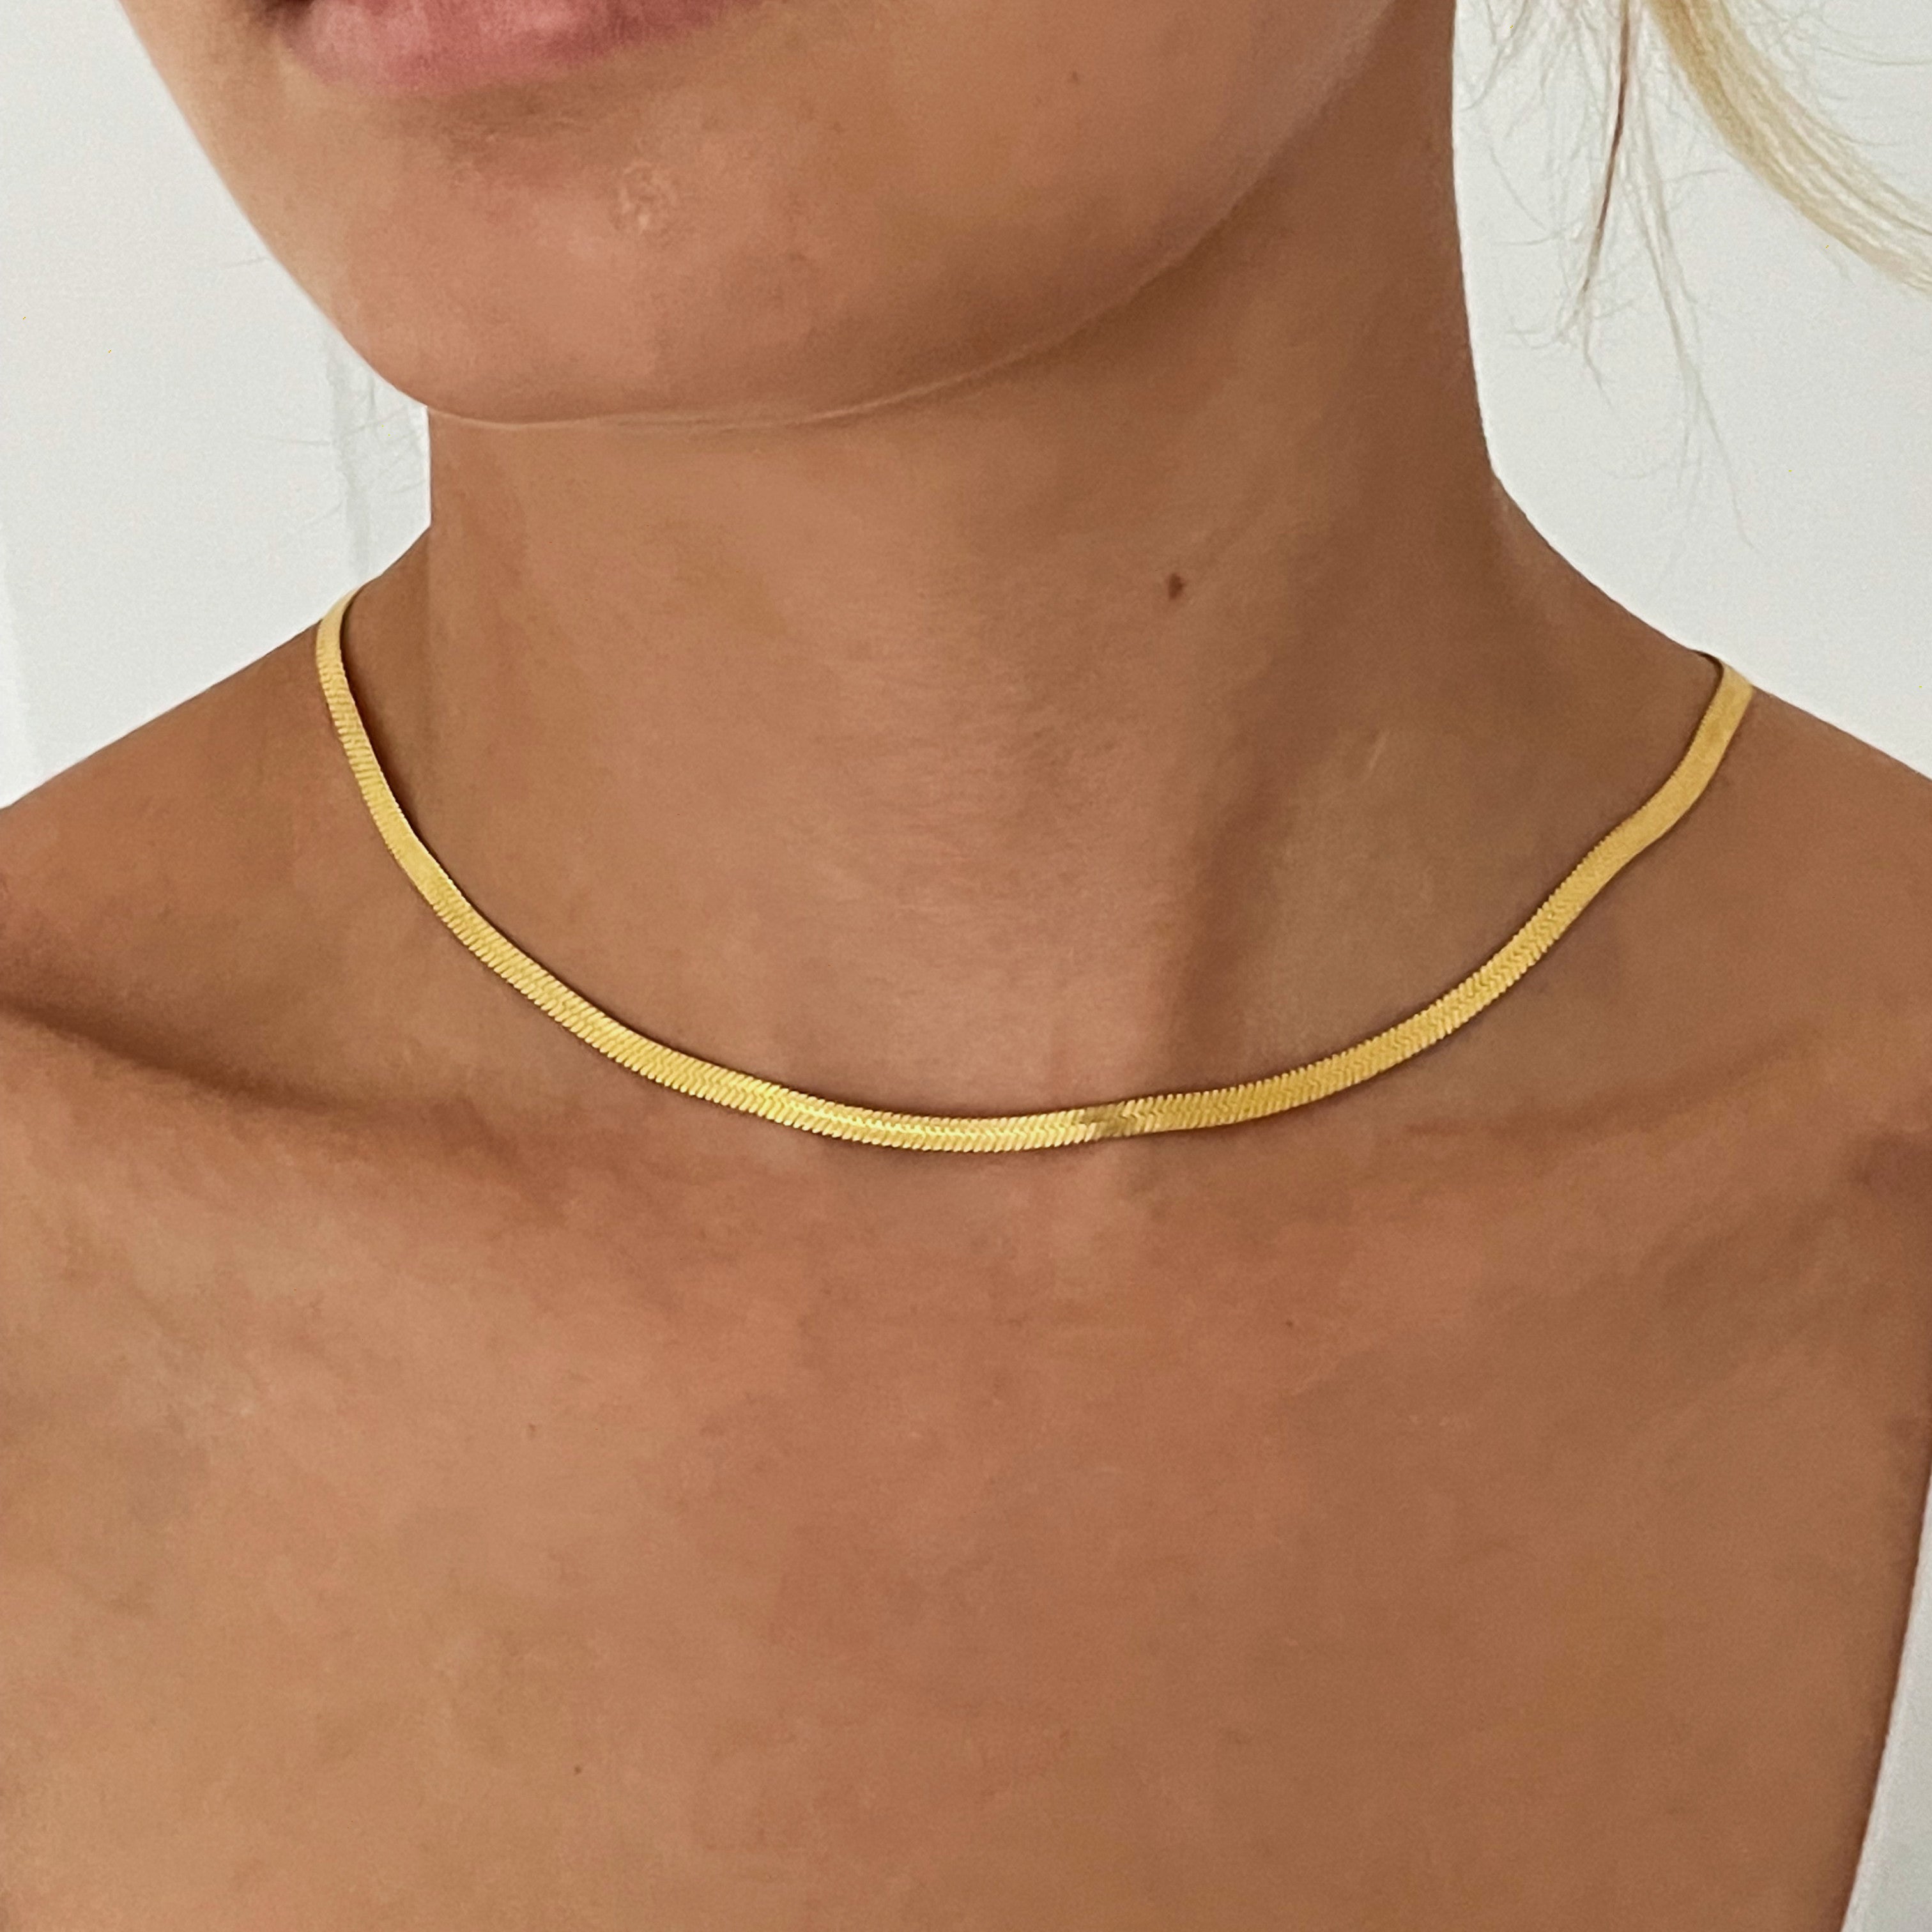 Stylish herringbone necklace with gold finish